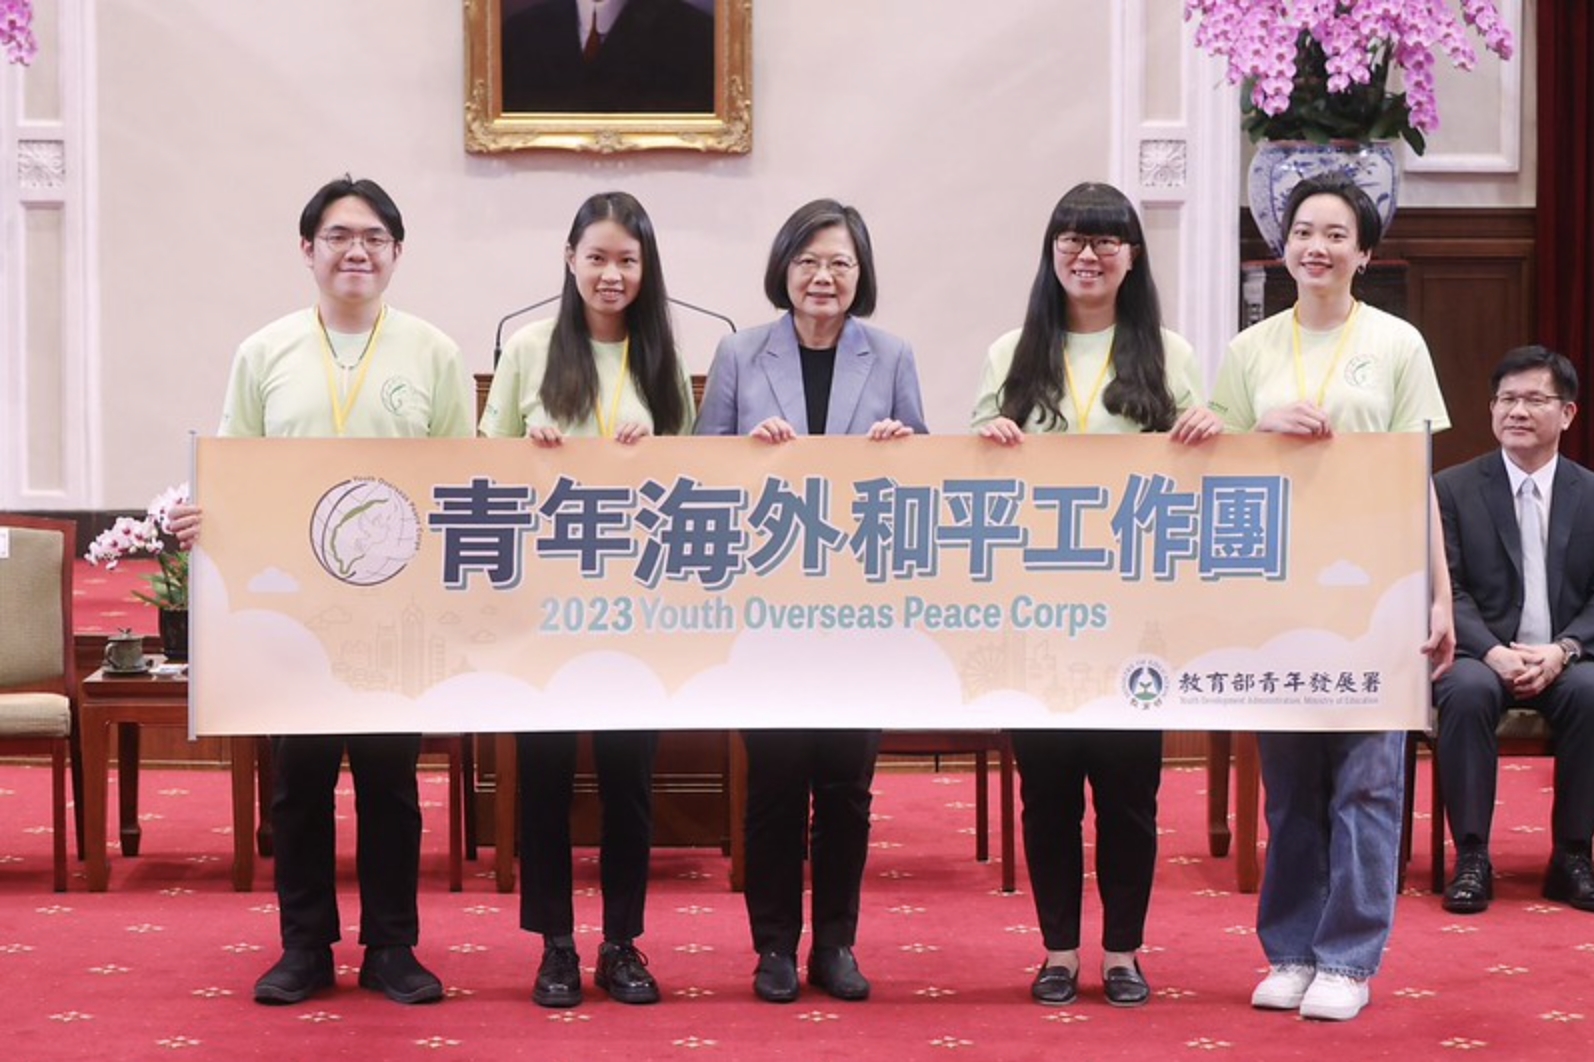 蔡總統和四位青年志工代表（左至右：袁泰智、李盈萱、林語珊、黃馨平）授旗後合影